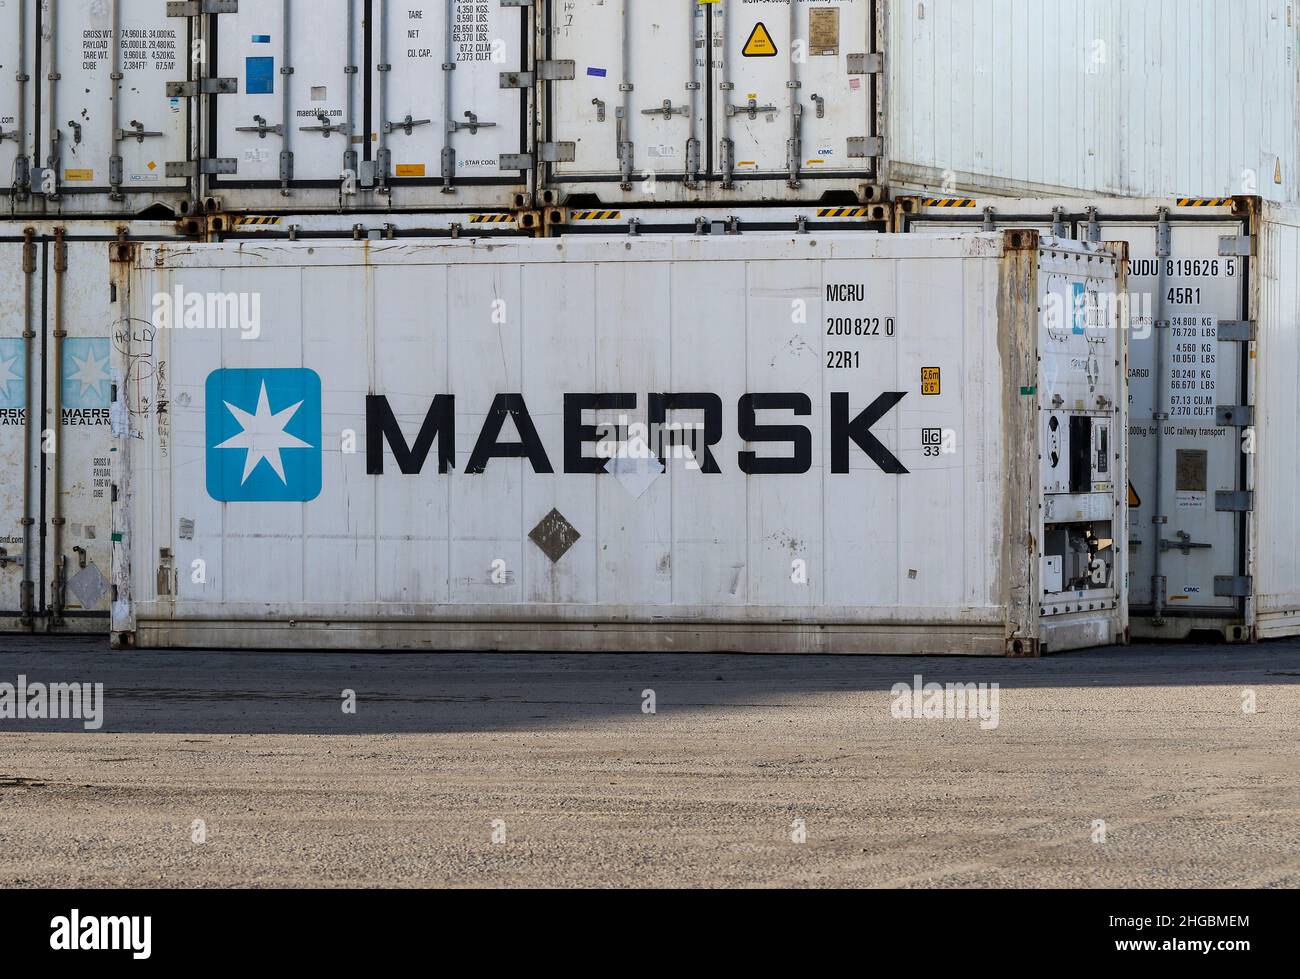 Conteneurs d'expédition Maersk avec logo de la société.Caisses réfrigérées blanches utilisées pour transporter ou expédier des marchandises réfrigérées ou du fret.Irlande Banque D'Images